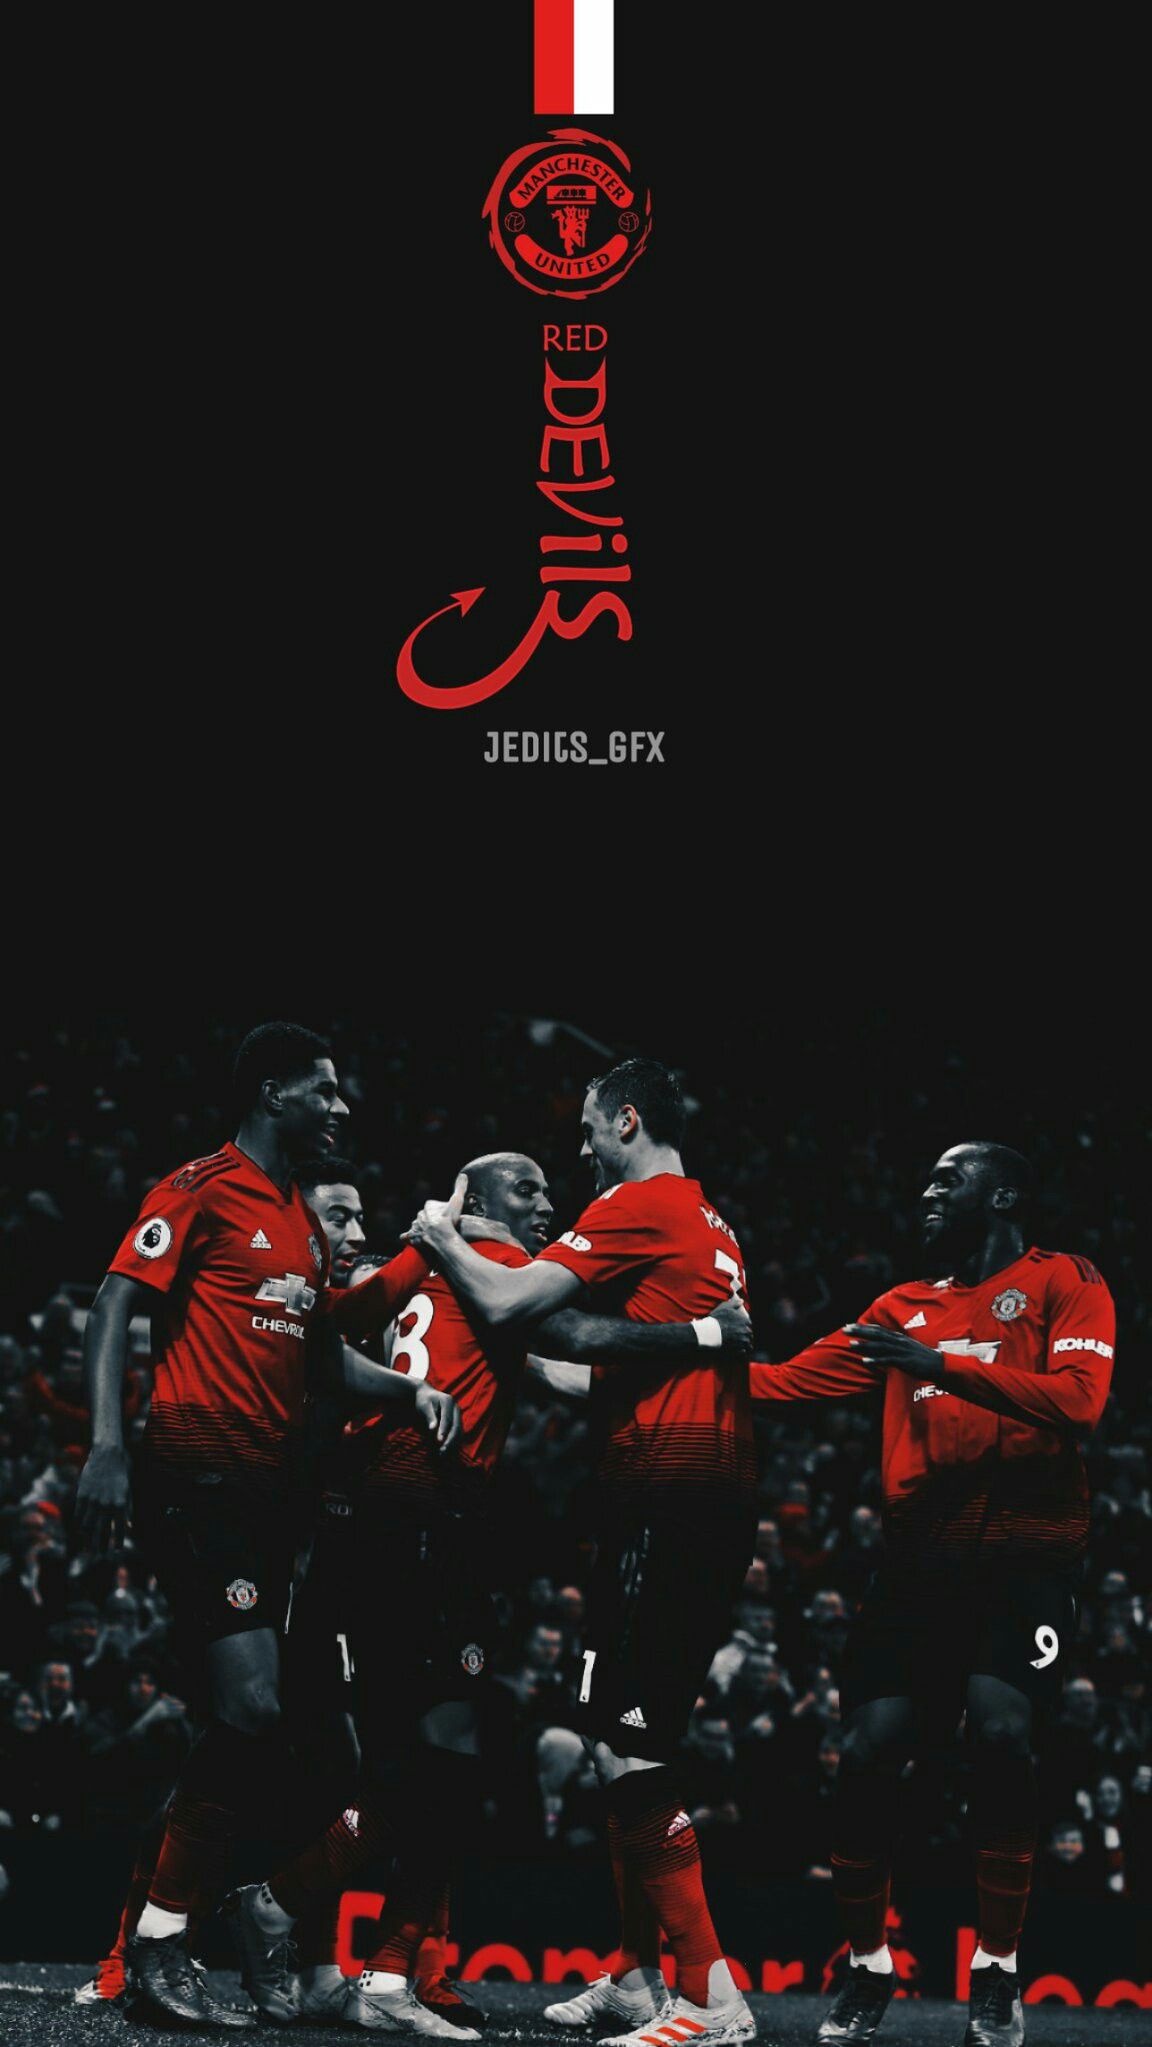 The red devils pemain sepak bola olahraga sepak bola